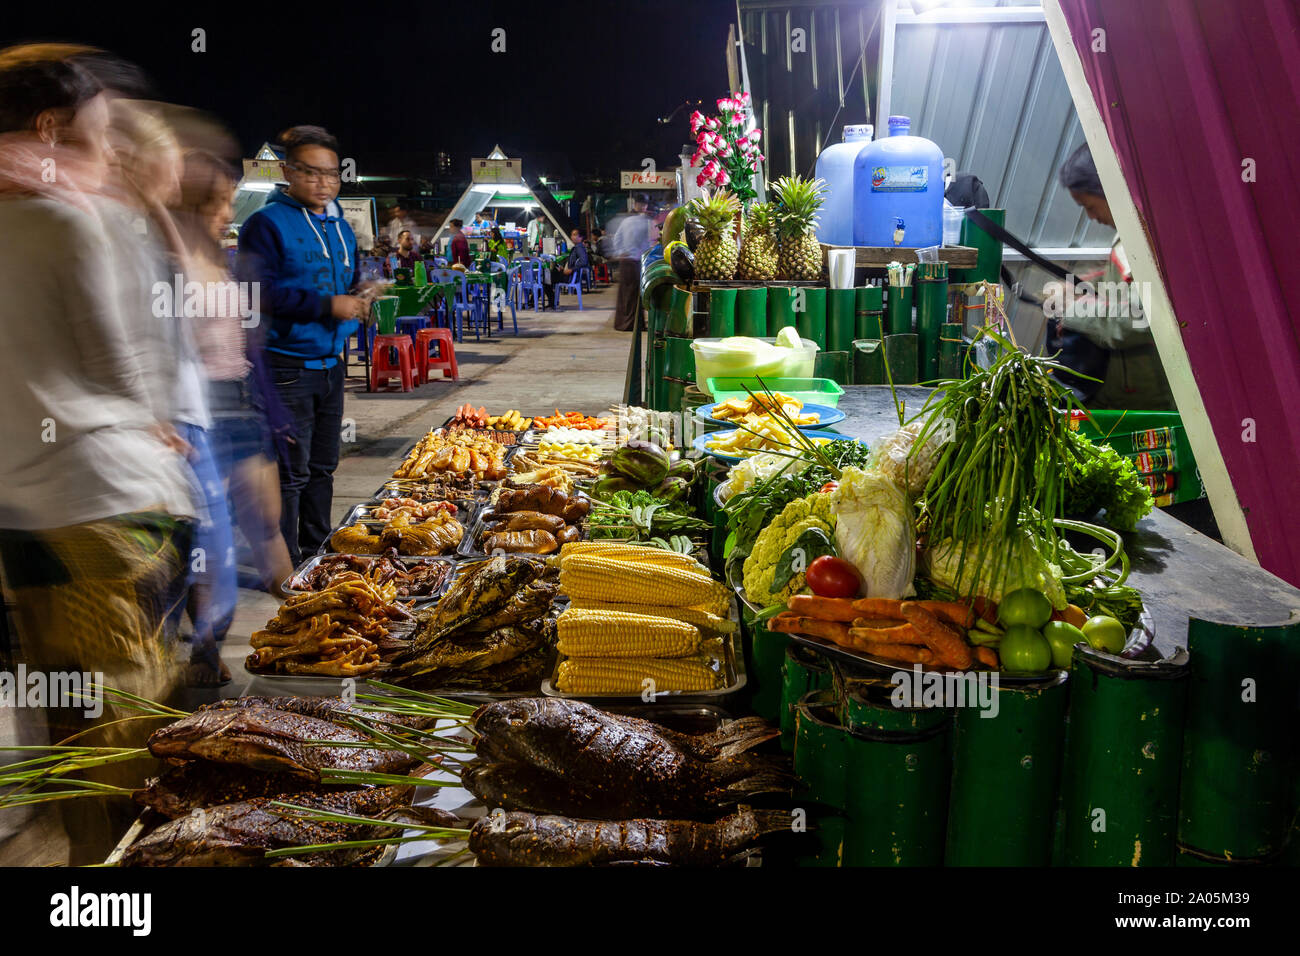 Einheimische und Touristen die Wahl Street Food auf Anzeige in der Nacht Markt in Nyaung Shwe See Inle, Shan Staat, Myanmar Stockfoto